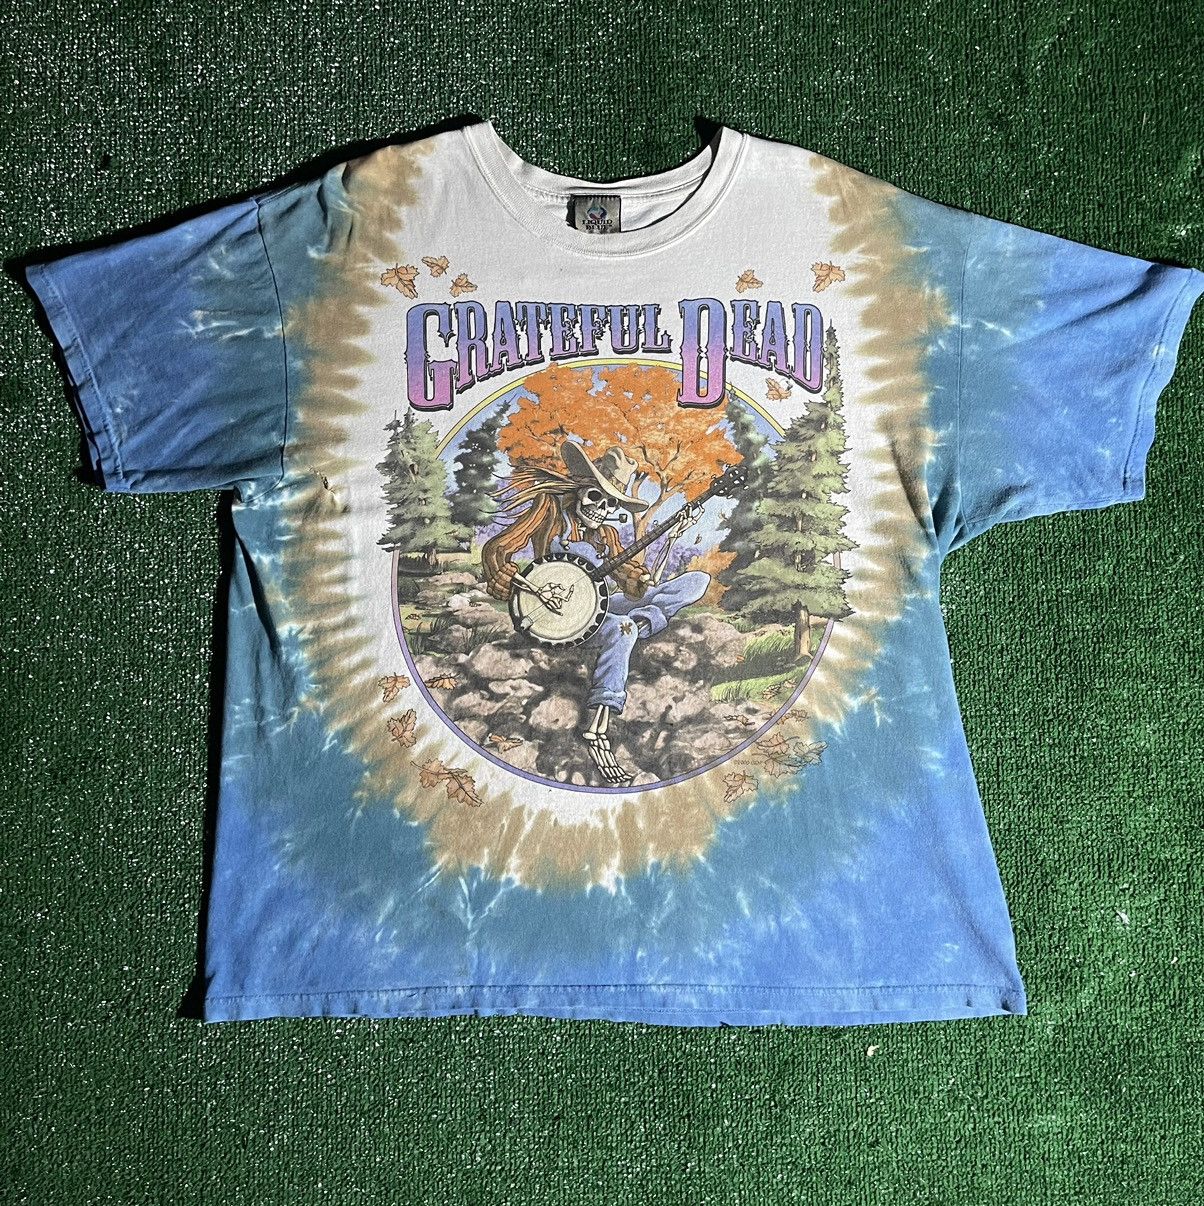 Grateful Dead Banjo Tie Dye T-Shirt